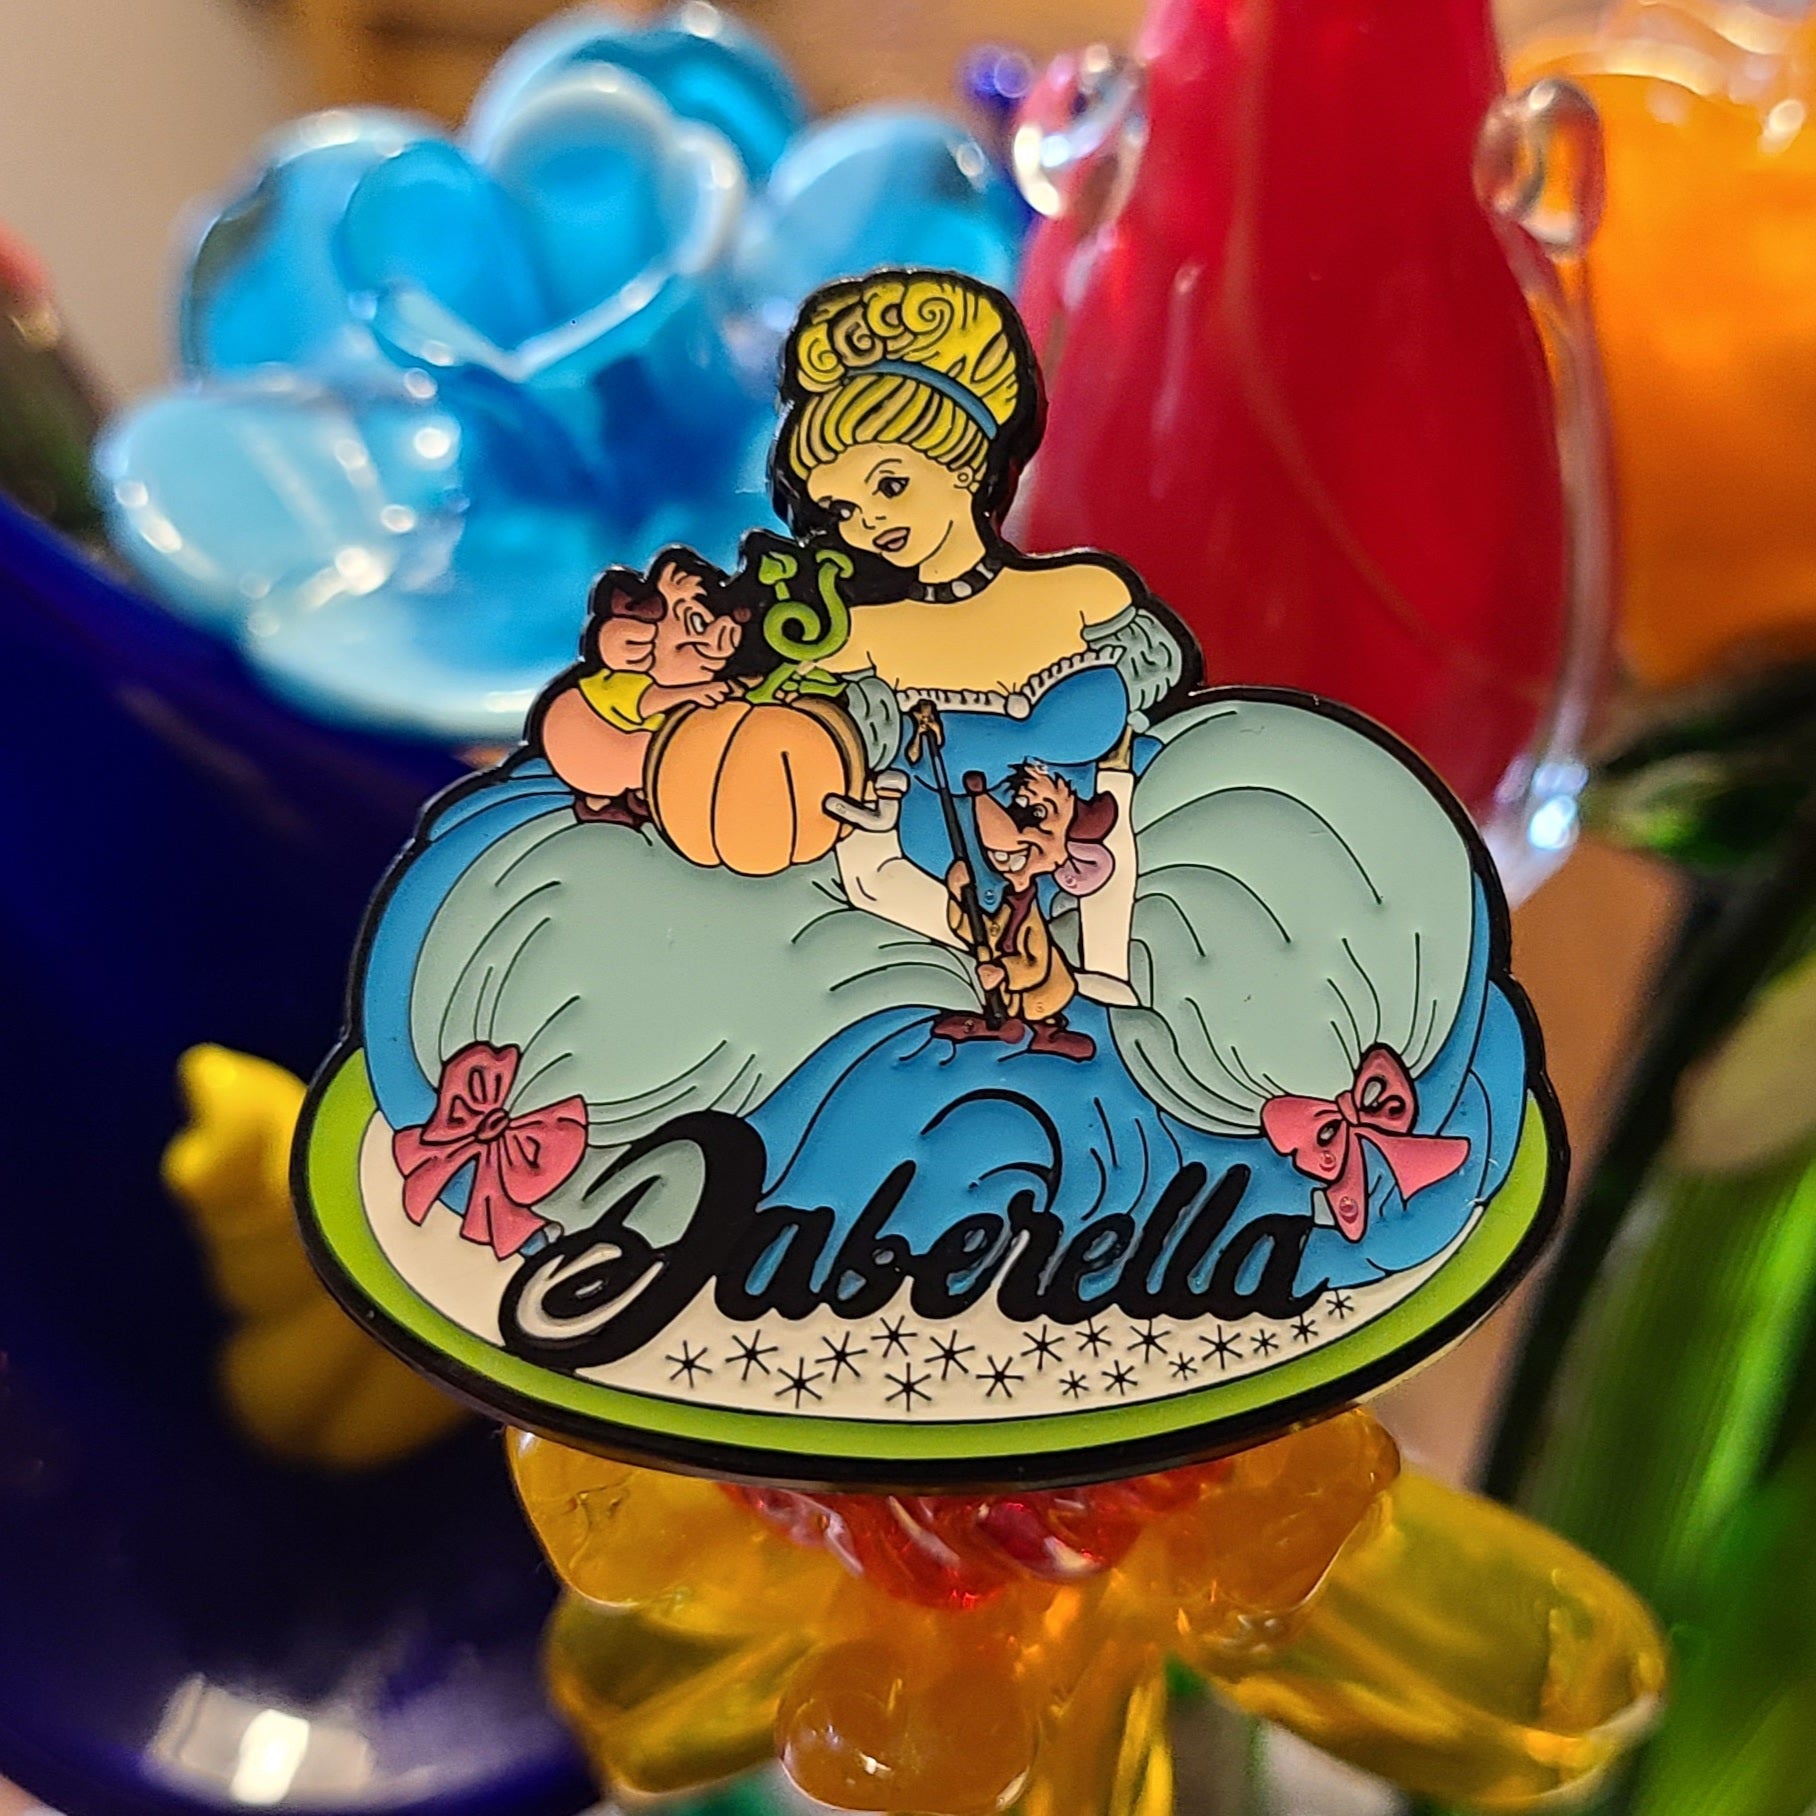 10 Pack - Daberella Weed Princess Pumpkin Dab Wholesale Enamel Pins Hat Pins Lapel Pin Brooch Badge Festival Pin